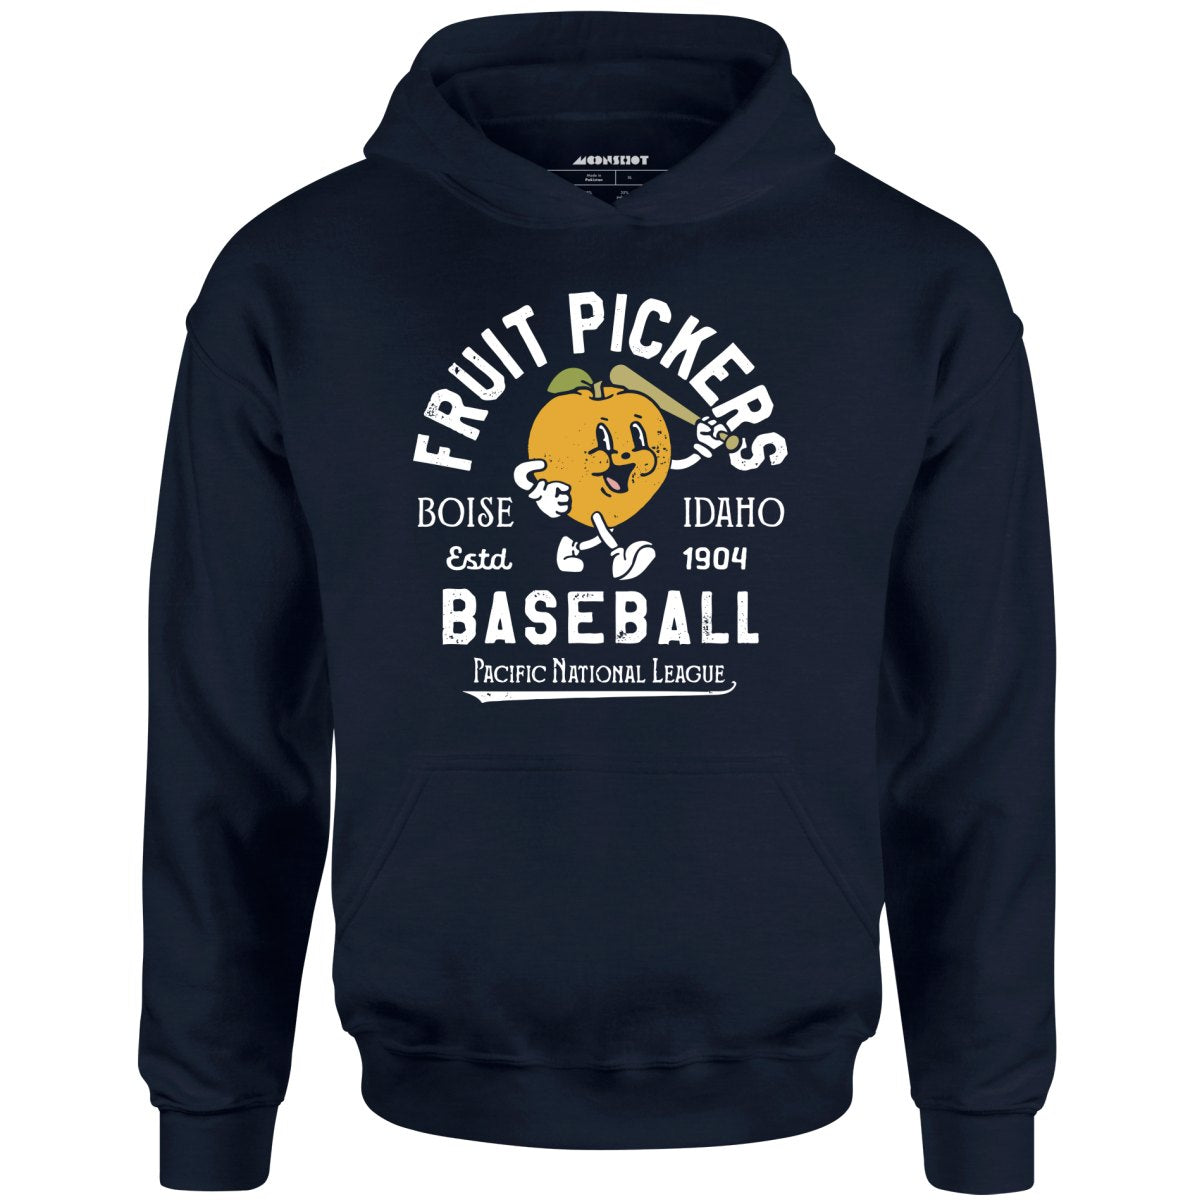 Boise Fruit Pickers - Idaho - Vintage Defunct Baseball Teams - Unisex Hoodie